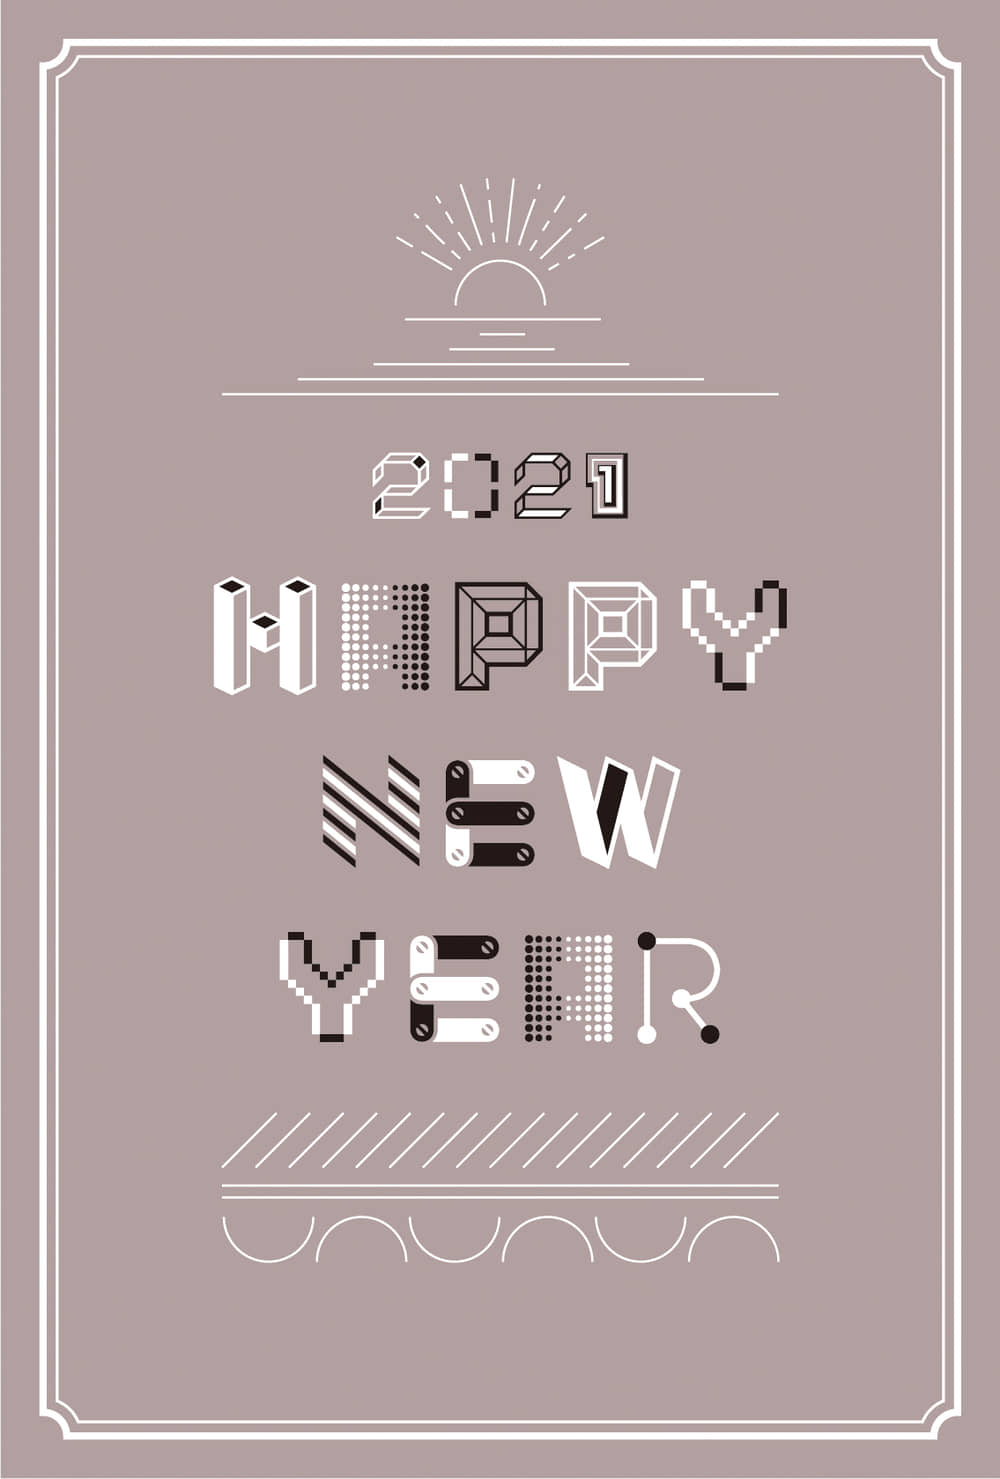 年賀状21デザイン 文字と線 かわいい 茶色 縦型 イラストデータ 公式 イラスト素材サイト イラストダウンロード